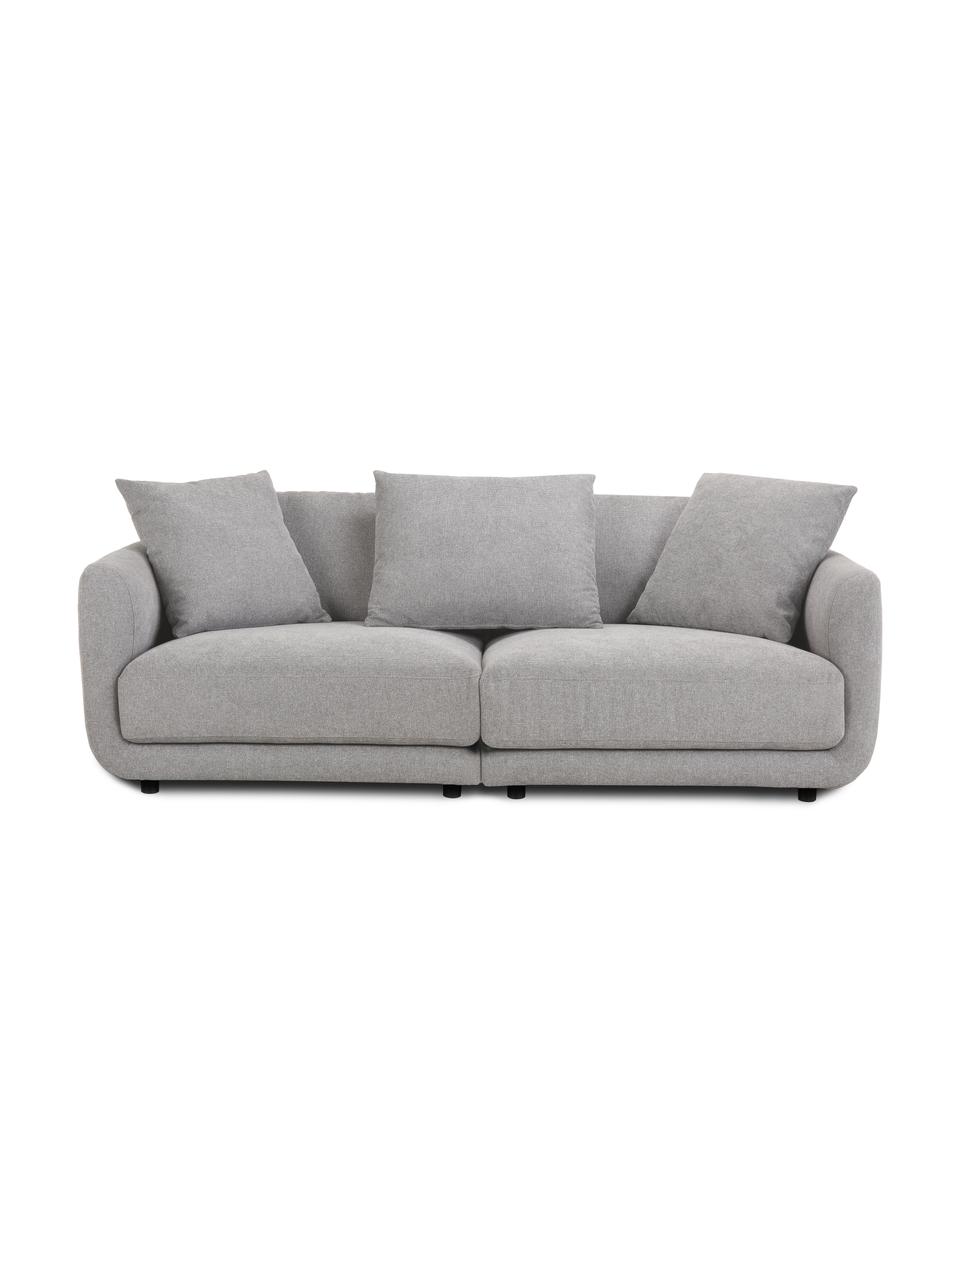 Sofa modułowa Jasmin (3-osobowa), Tapicerka: 85% poliester, 15% nylon , Nogi: tworzywo sztuczne, Szara tkanina, S 208 x W 84 cm